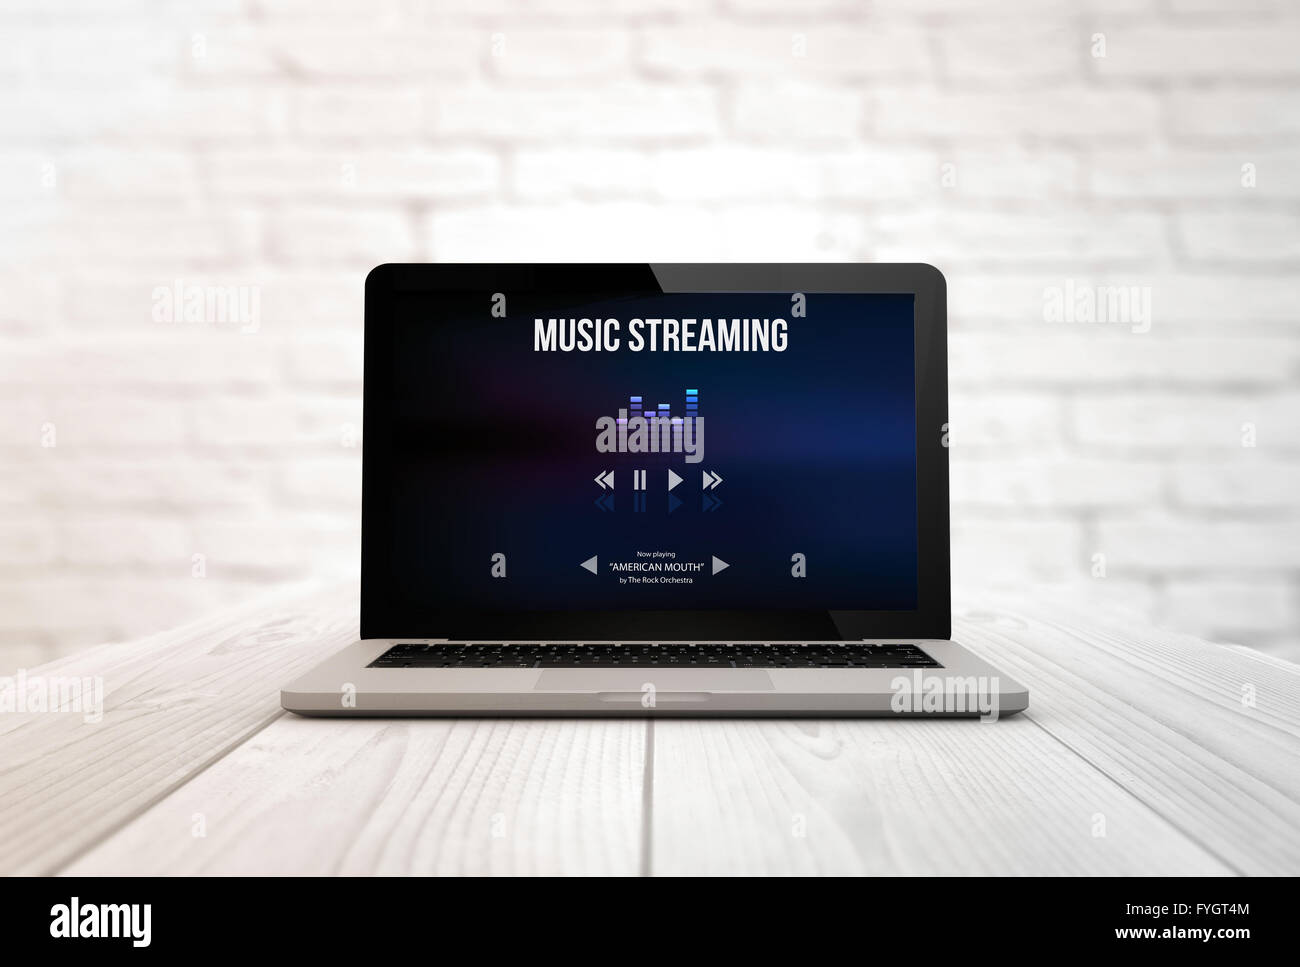 Concept de streaming : ordinateur portable sur une table en bois montrant la musique en continu. Écran graphique sont constitués. Illustr 3d Banque D'Images